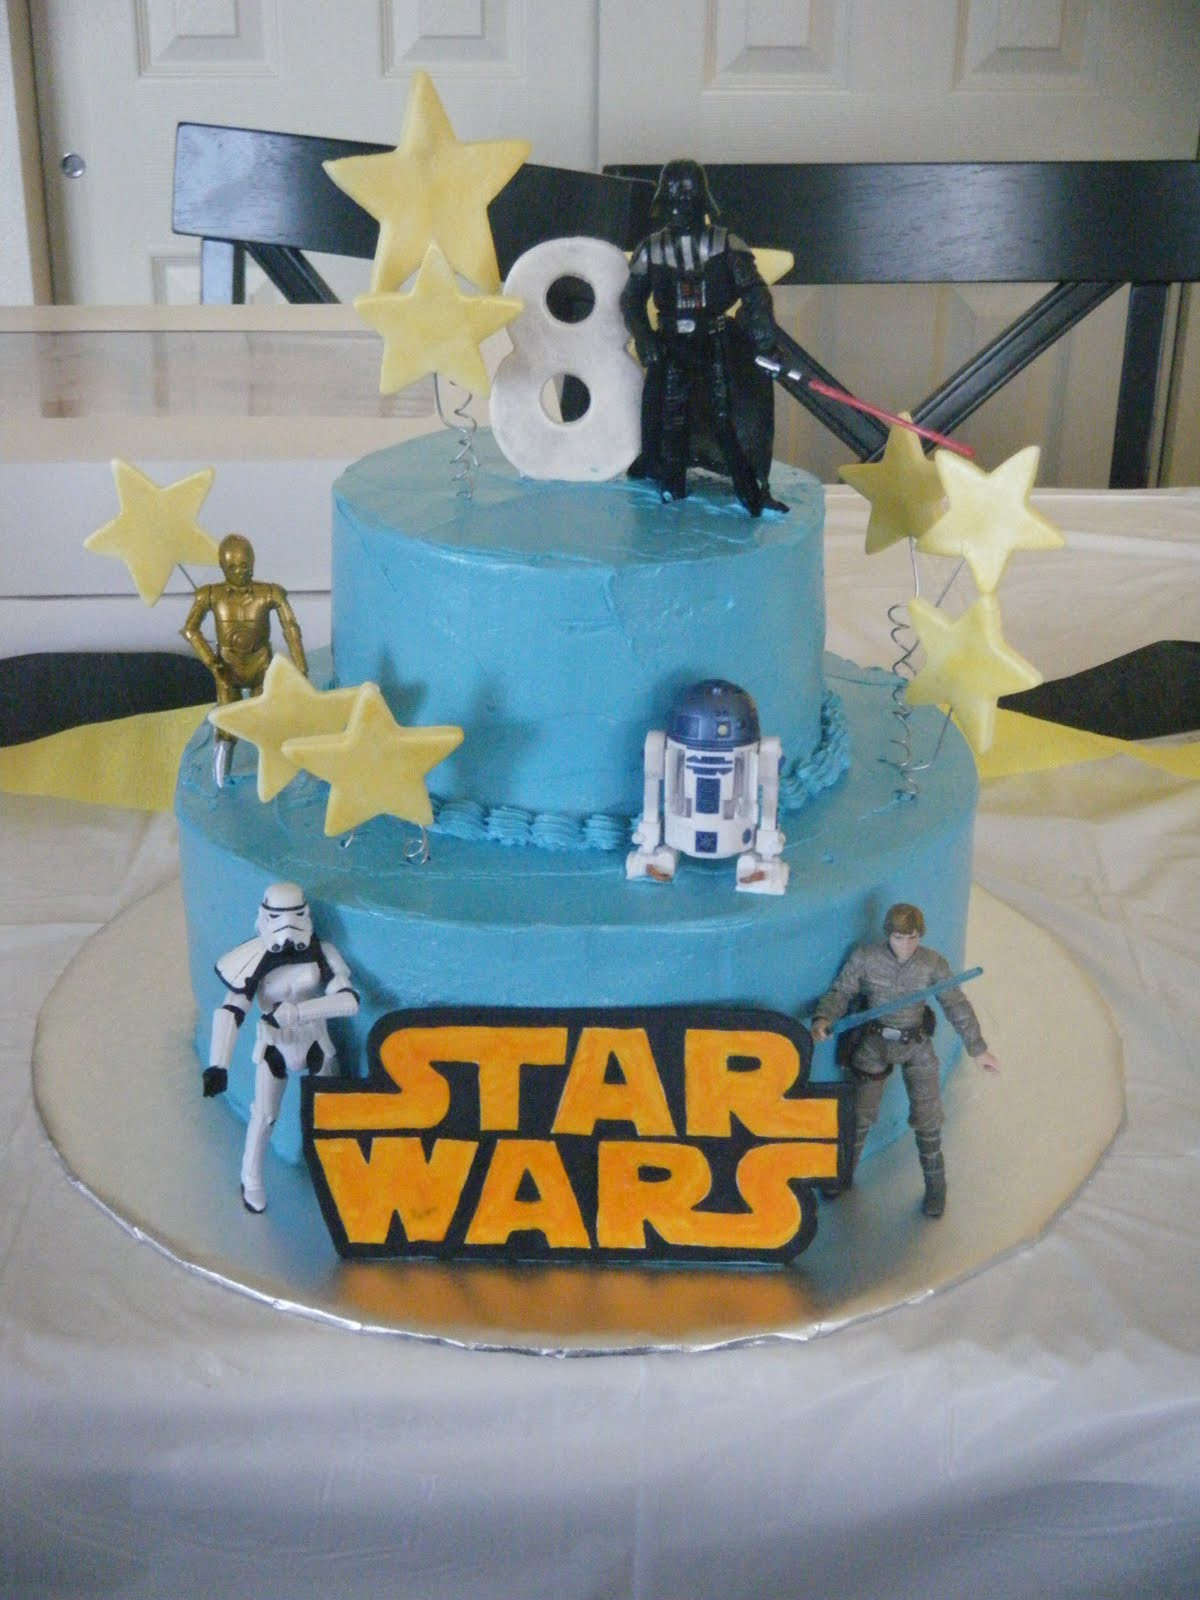 Star Wars Birthday Cake Decorations
 Cakessica Star Wars Birthday Cake